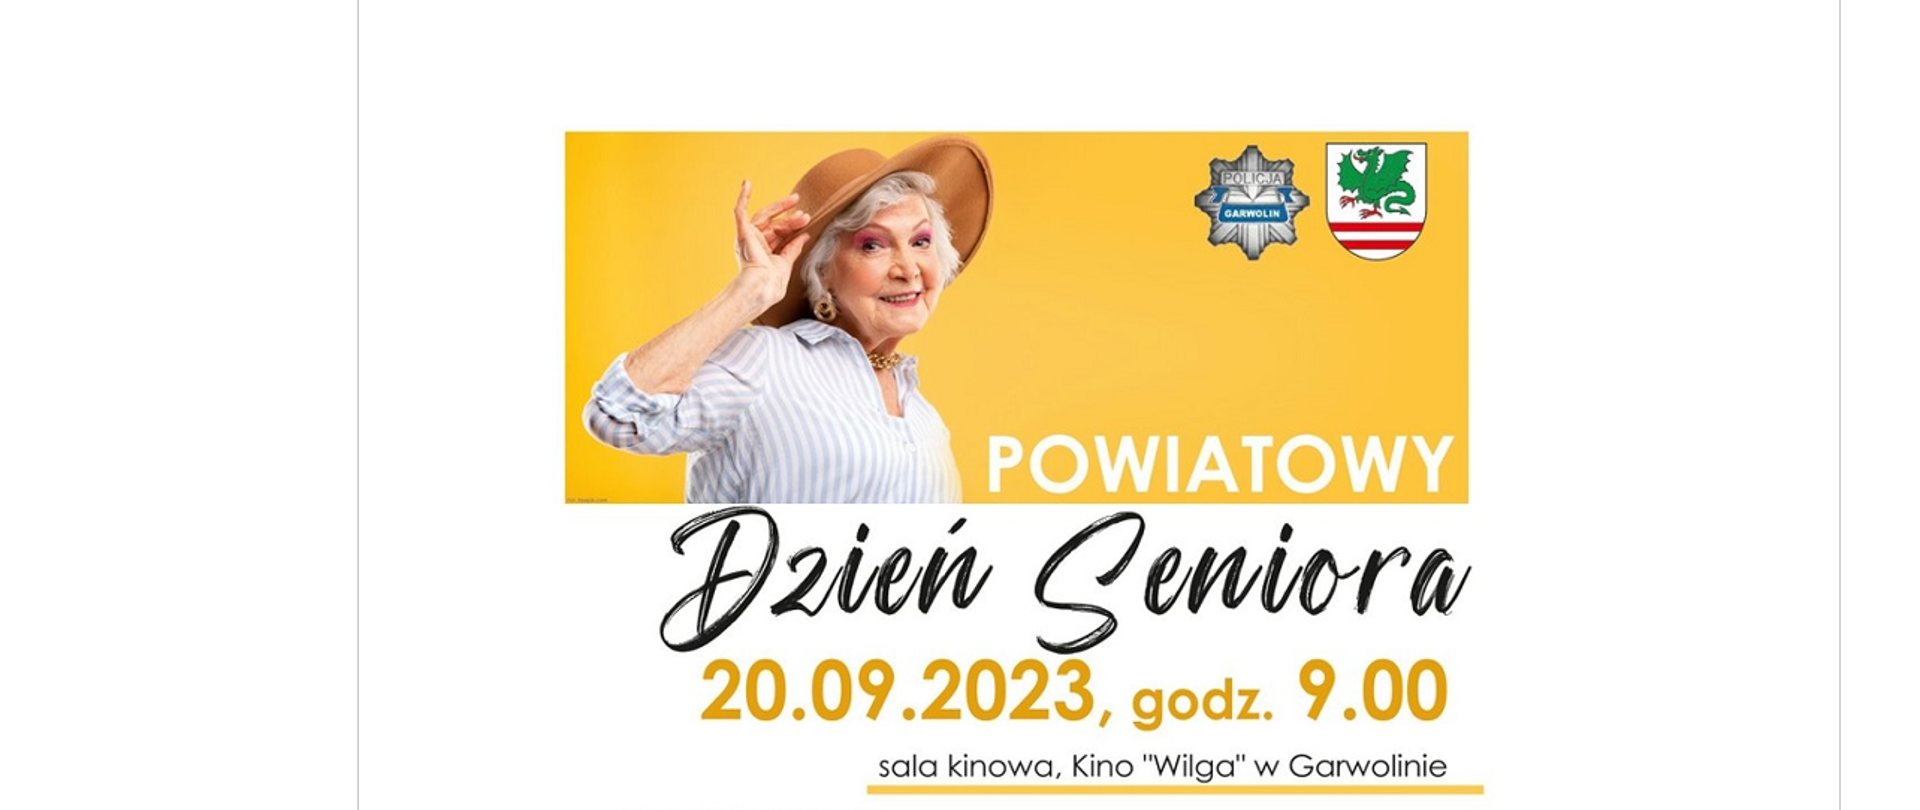 Ulotka reklamująca Powiatowy Dzień Seniora